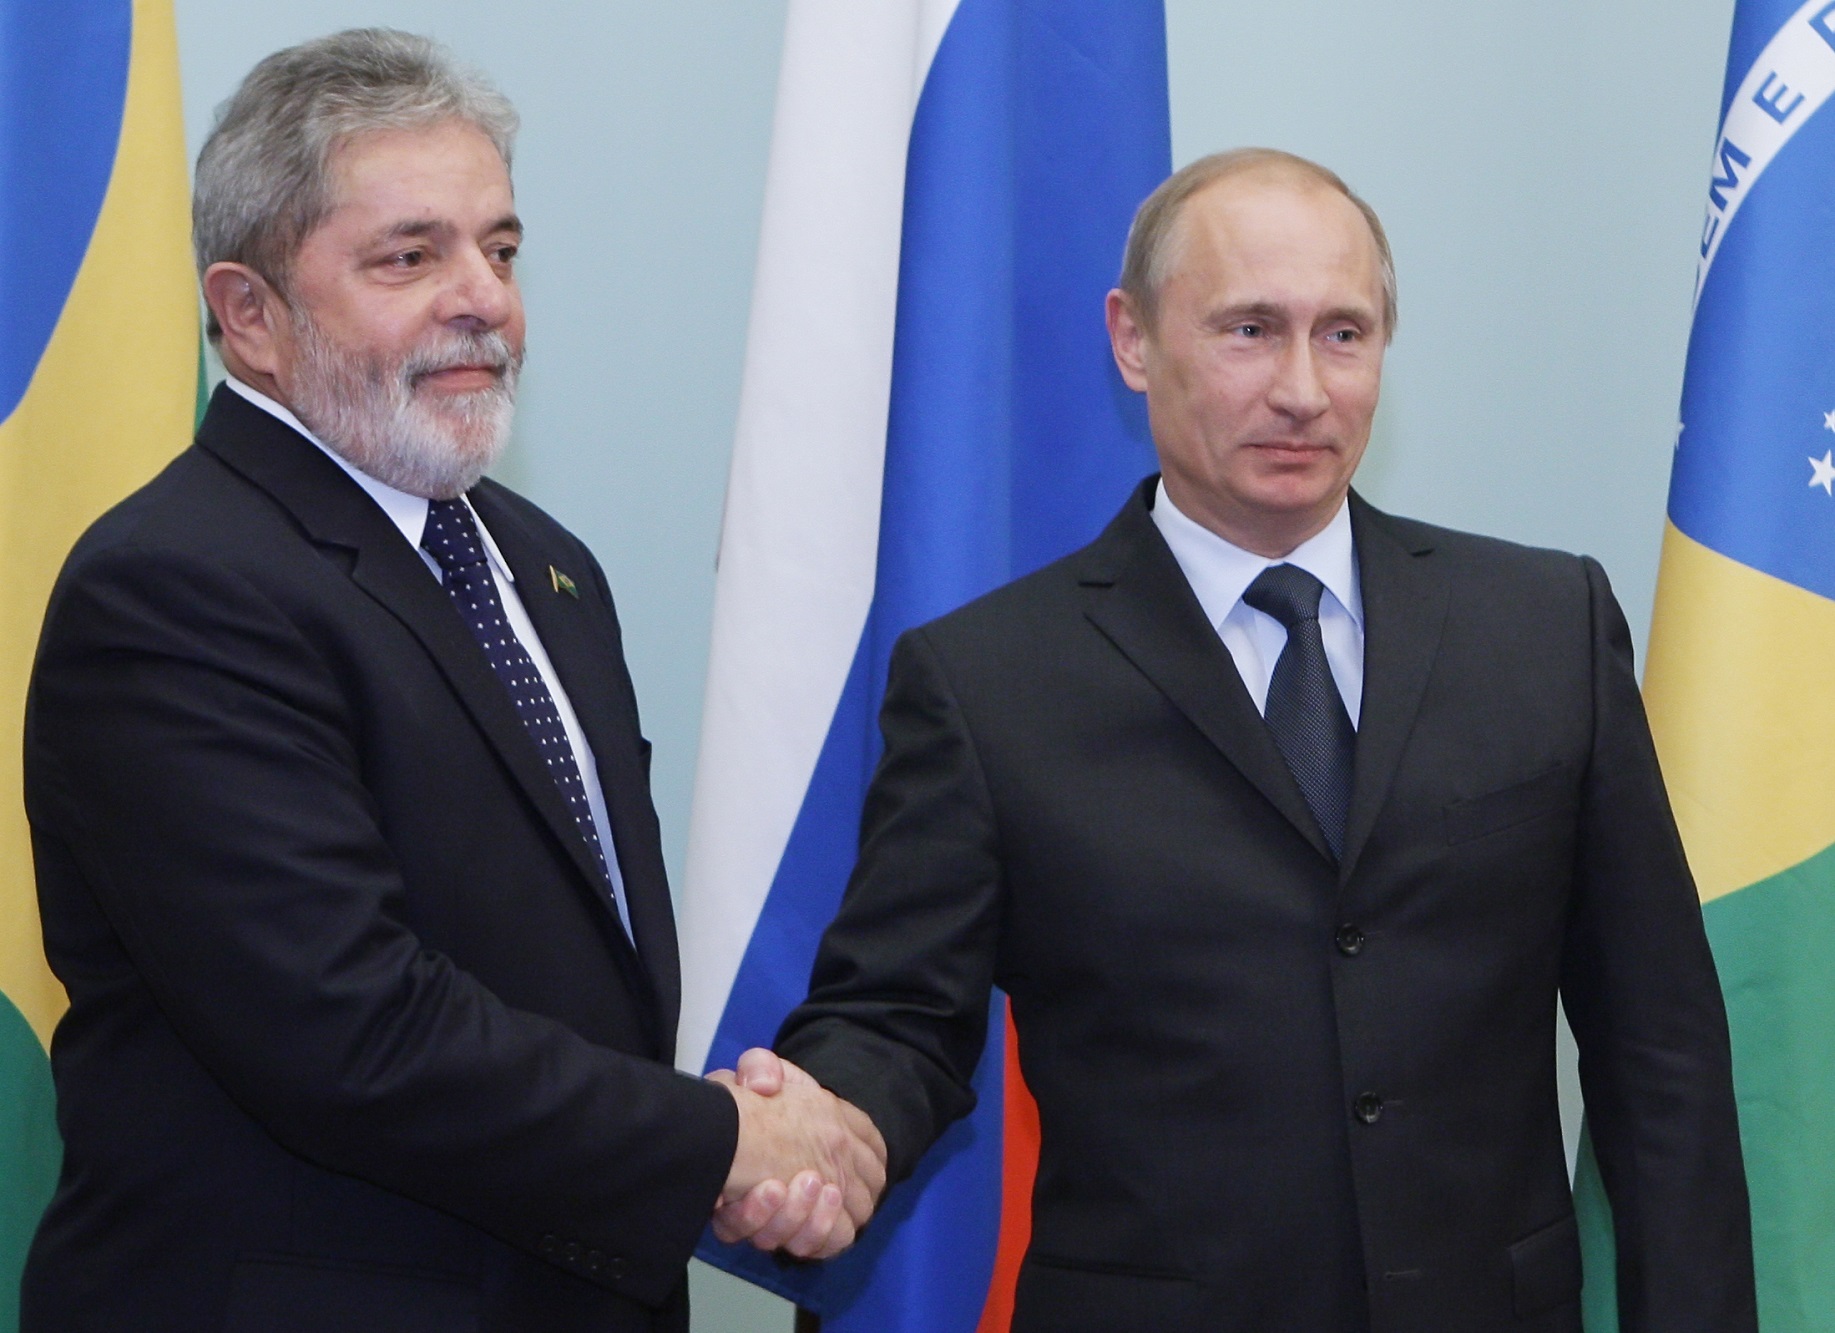 Βραζιλία-Ρωσία: Πούτιν και Λούλα τα είπαν και συμφώνησαν για σύσφιξη σχέσεων